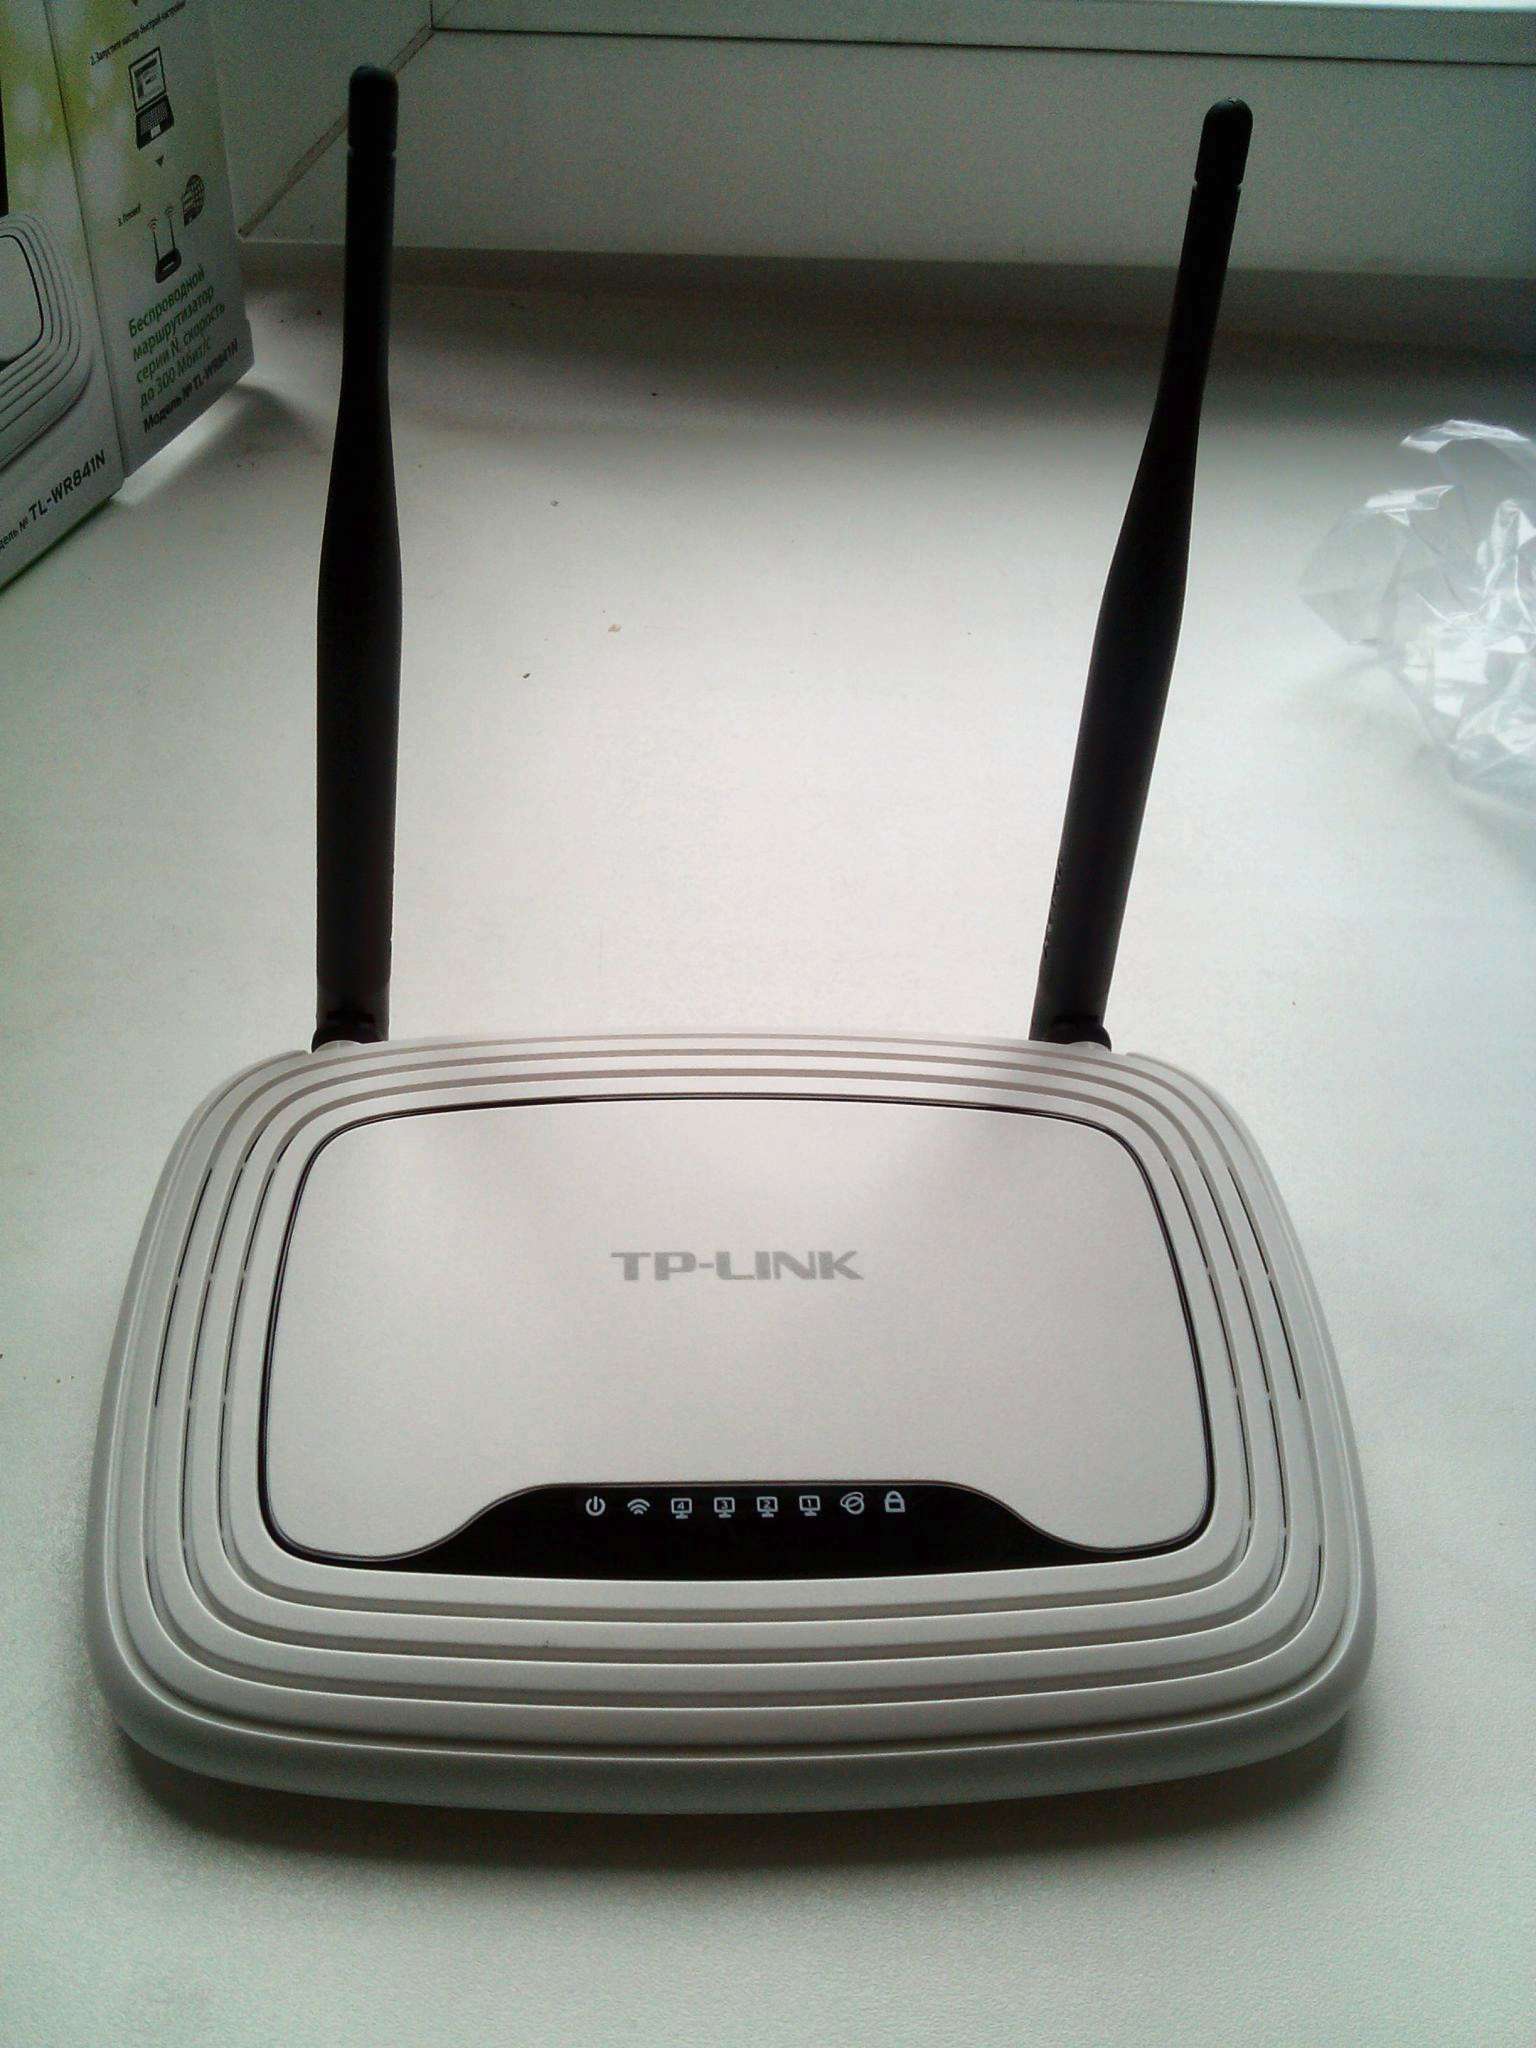 Купить роутер бу. Wi-Fi роутер TP-link TL-wr841n. TP-link TL-wr841n. Роутер ТП линк TL-wr841n. Wi-Fi роутер TP-link TL-wr841n, белый.